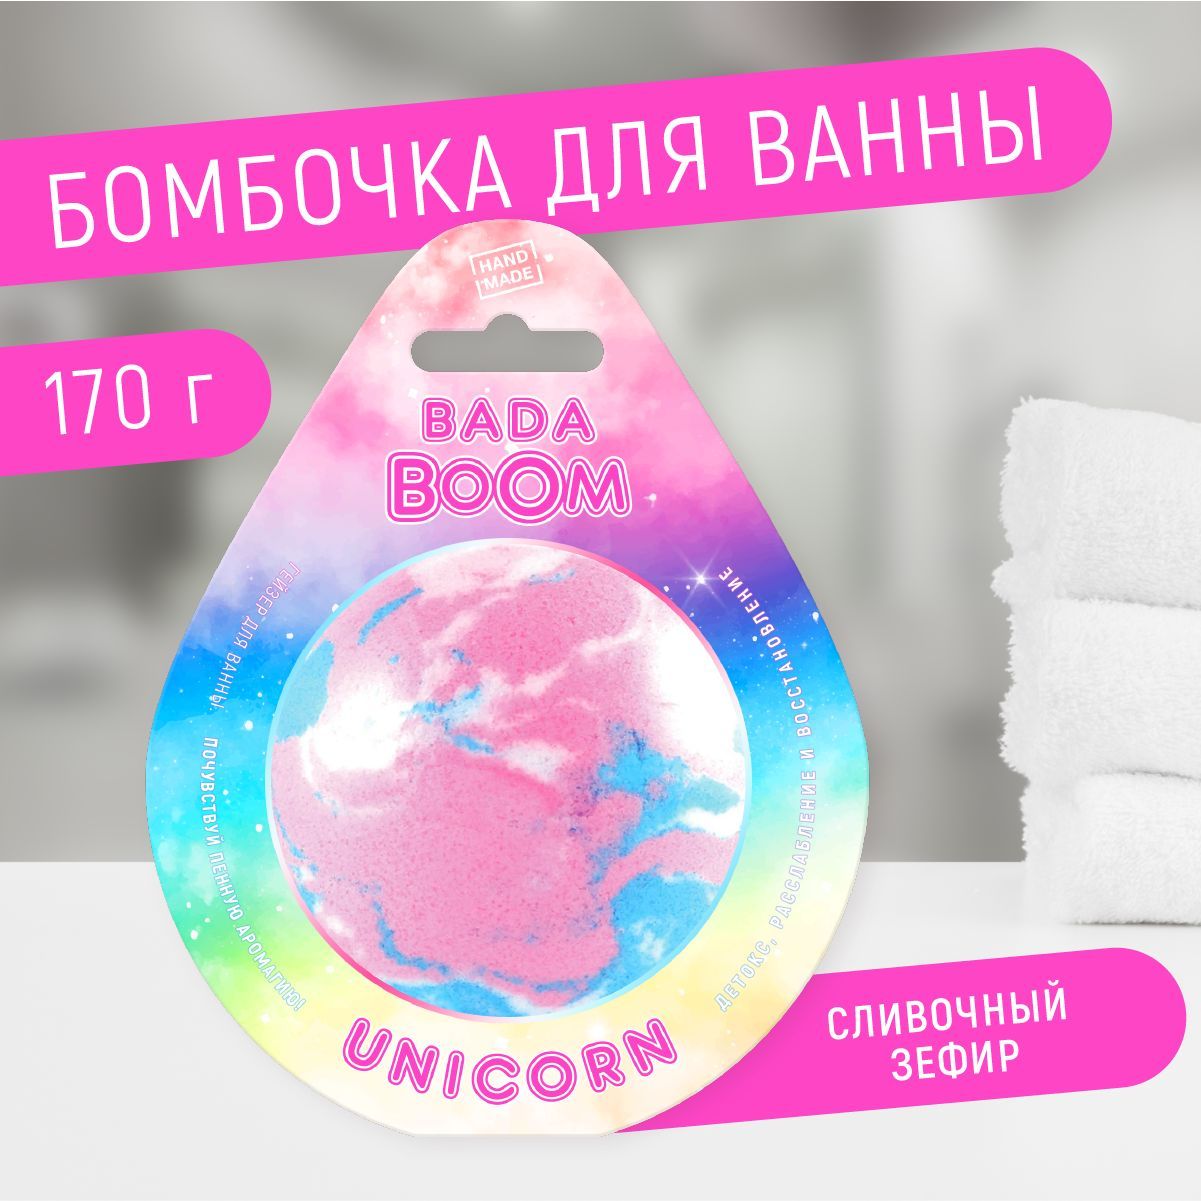 Бомбочка для ванны эко гейзер Unicorn сливочный зефир 170 г грелка термохимическая солевая лор